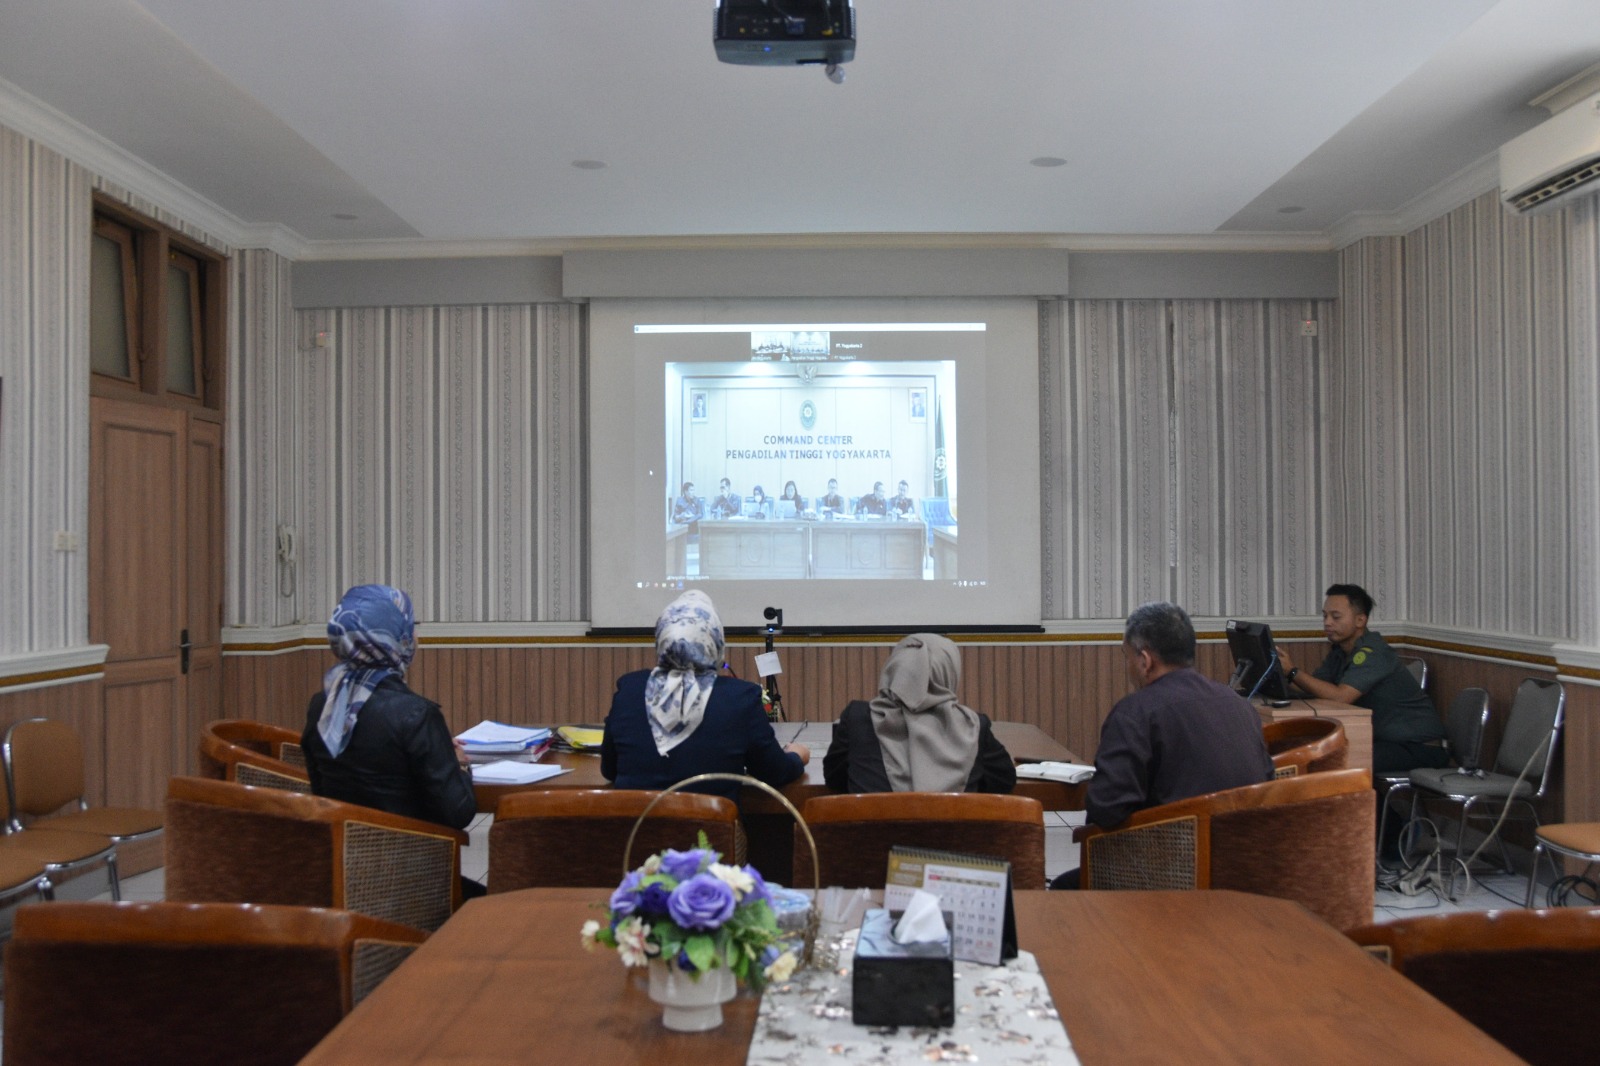 Pengadilan Negeri Yogyakarta Mengikuti Pengawasan Daerah secara Daring oleh Pengadilan Tinggi Yogyakarta